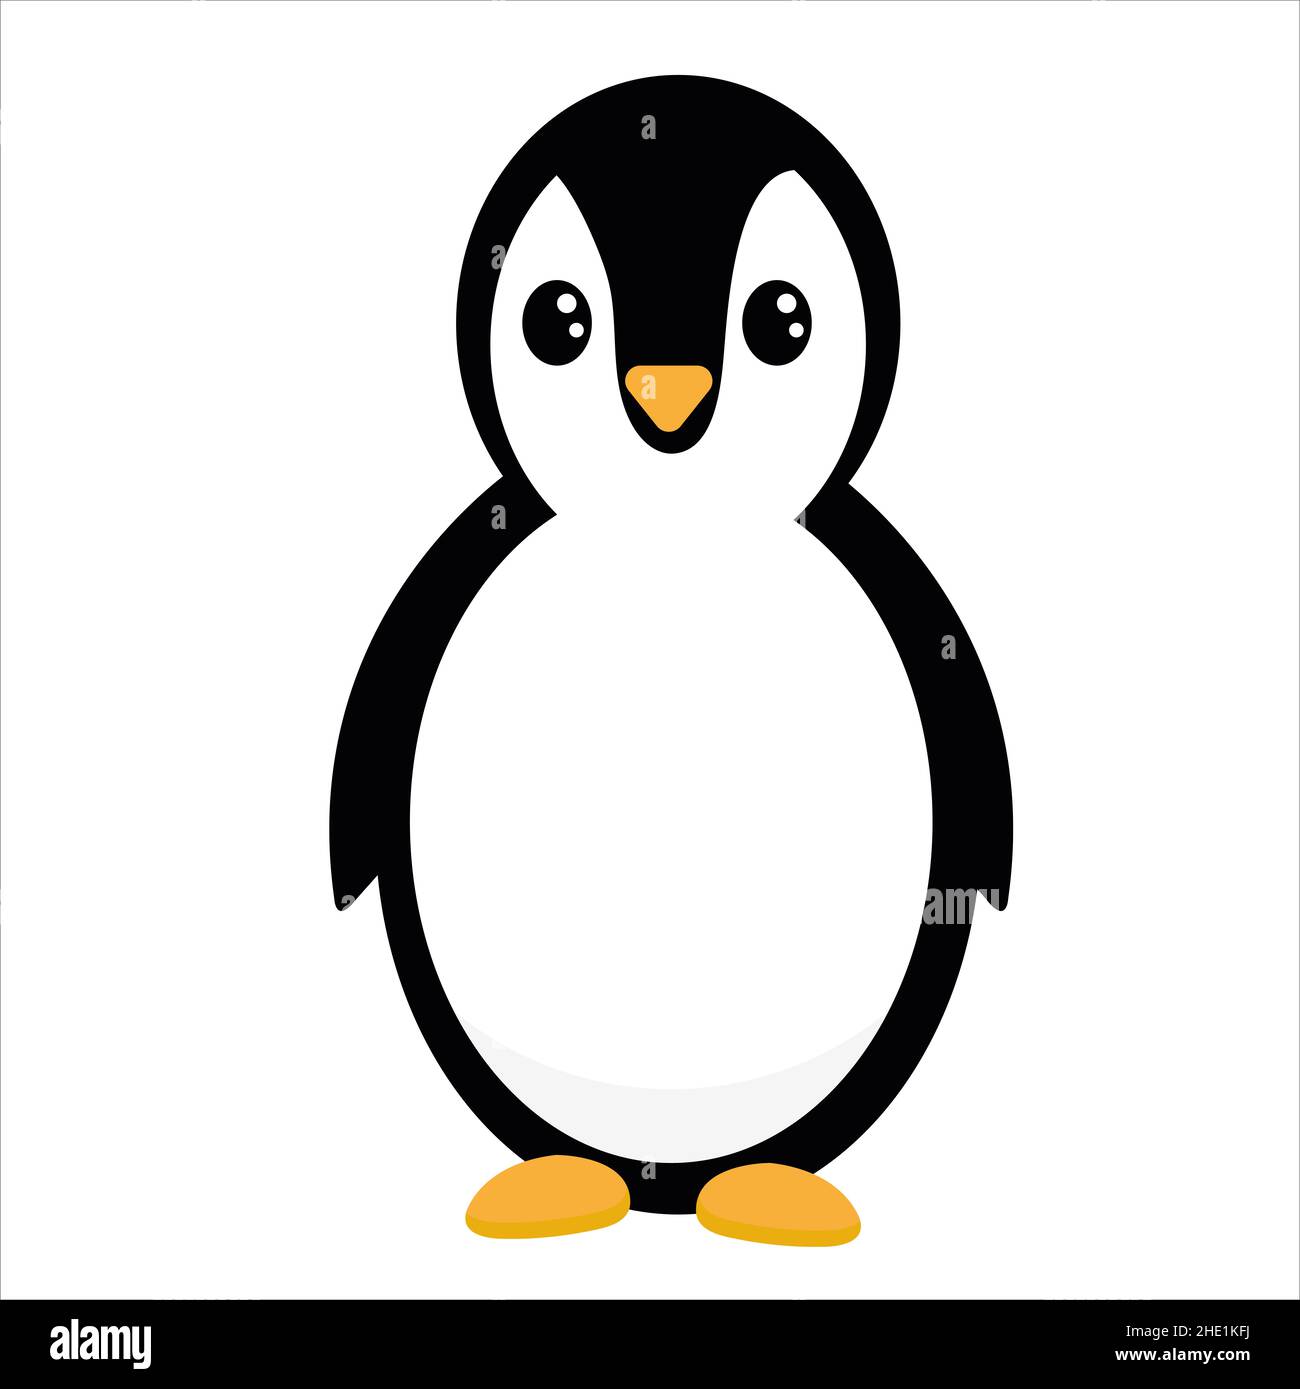 Ilustración de pingüino fotografías e imágenes de alta resolución - Página  2 - Alamy